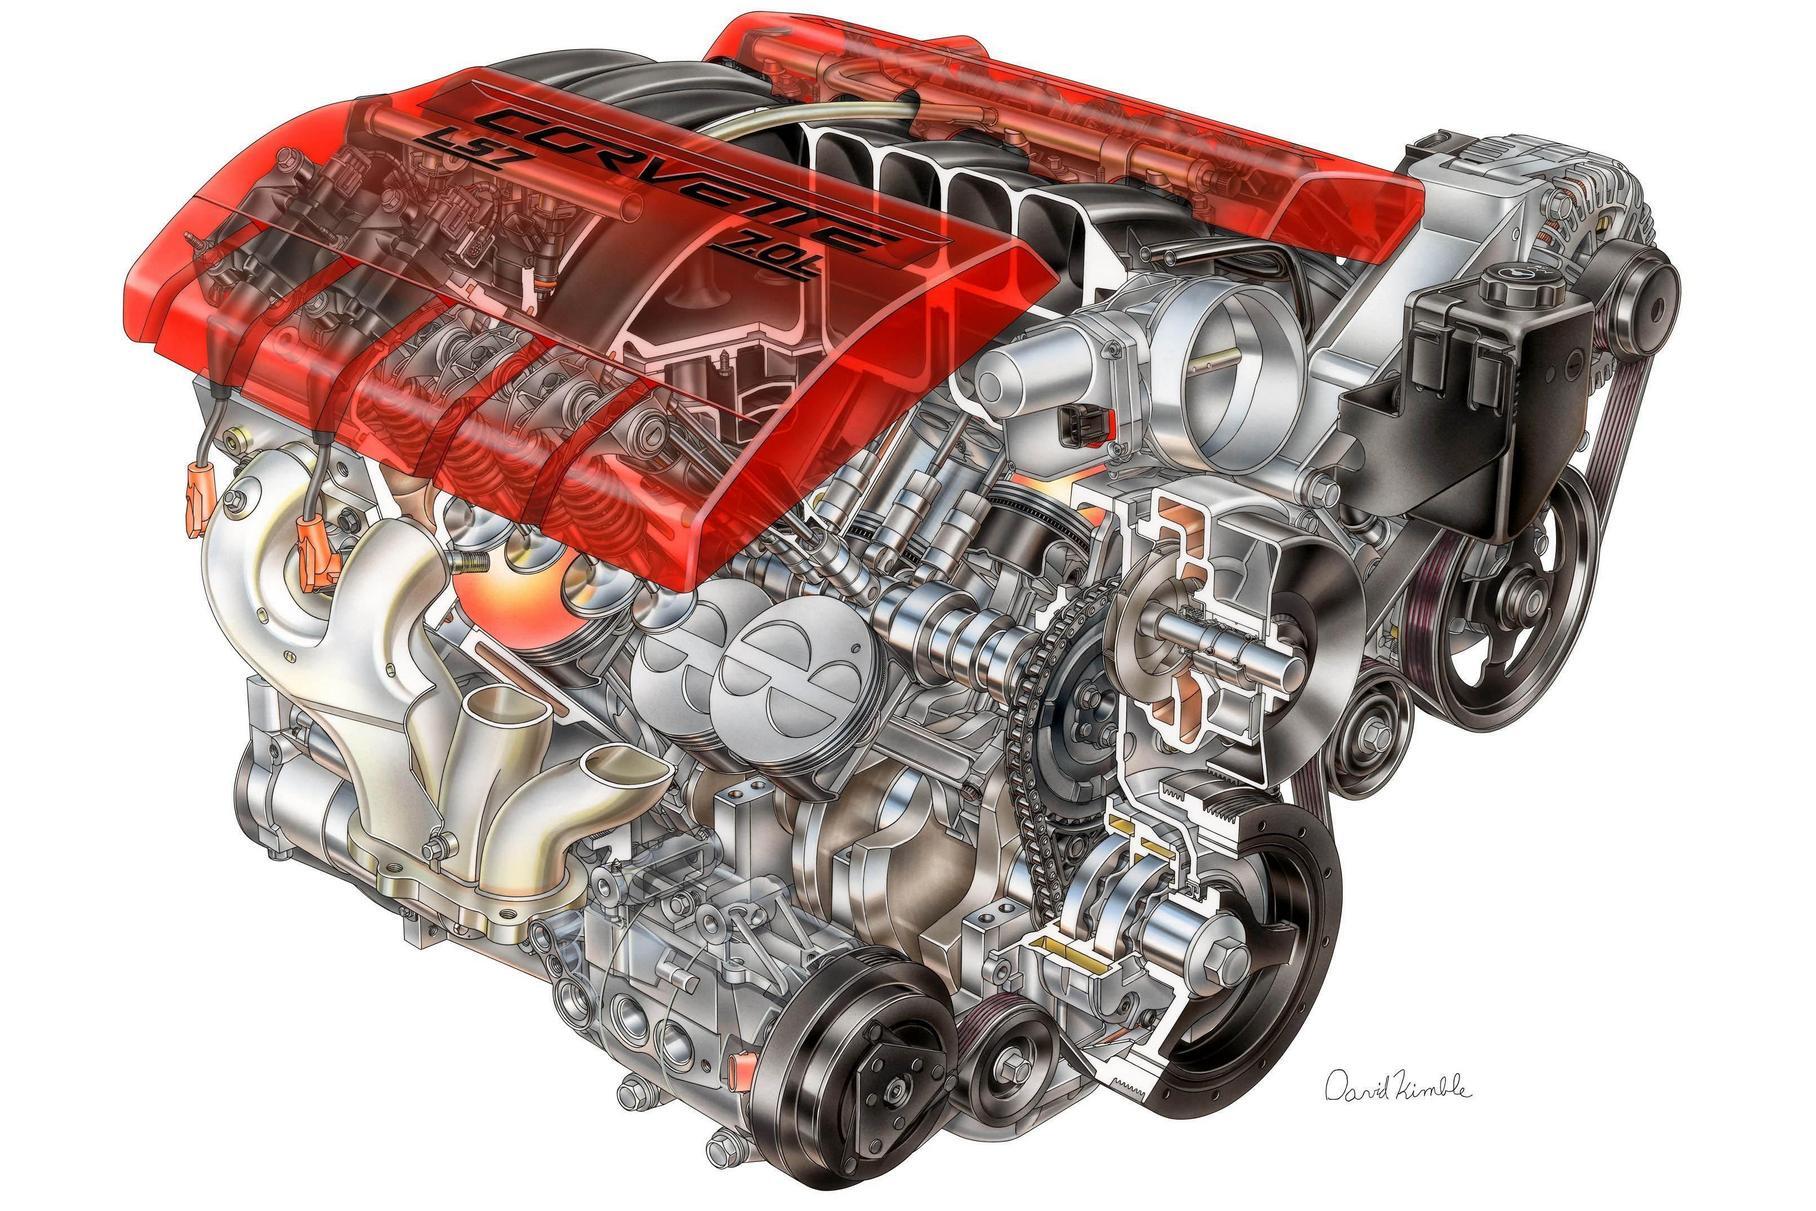 Двигатель Chevrolet LS7 считается самым продвинутым в LS-серии, с очень продуманной «мощностной» конструкцией головок. Это V8 объёмом 7 литров и мощностью 505 лошадиных сил. Как у остальных моторов этого семейства, у него нижнее расположение распредвала и по два клапана на цилиндр.